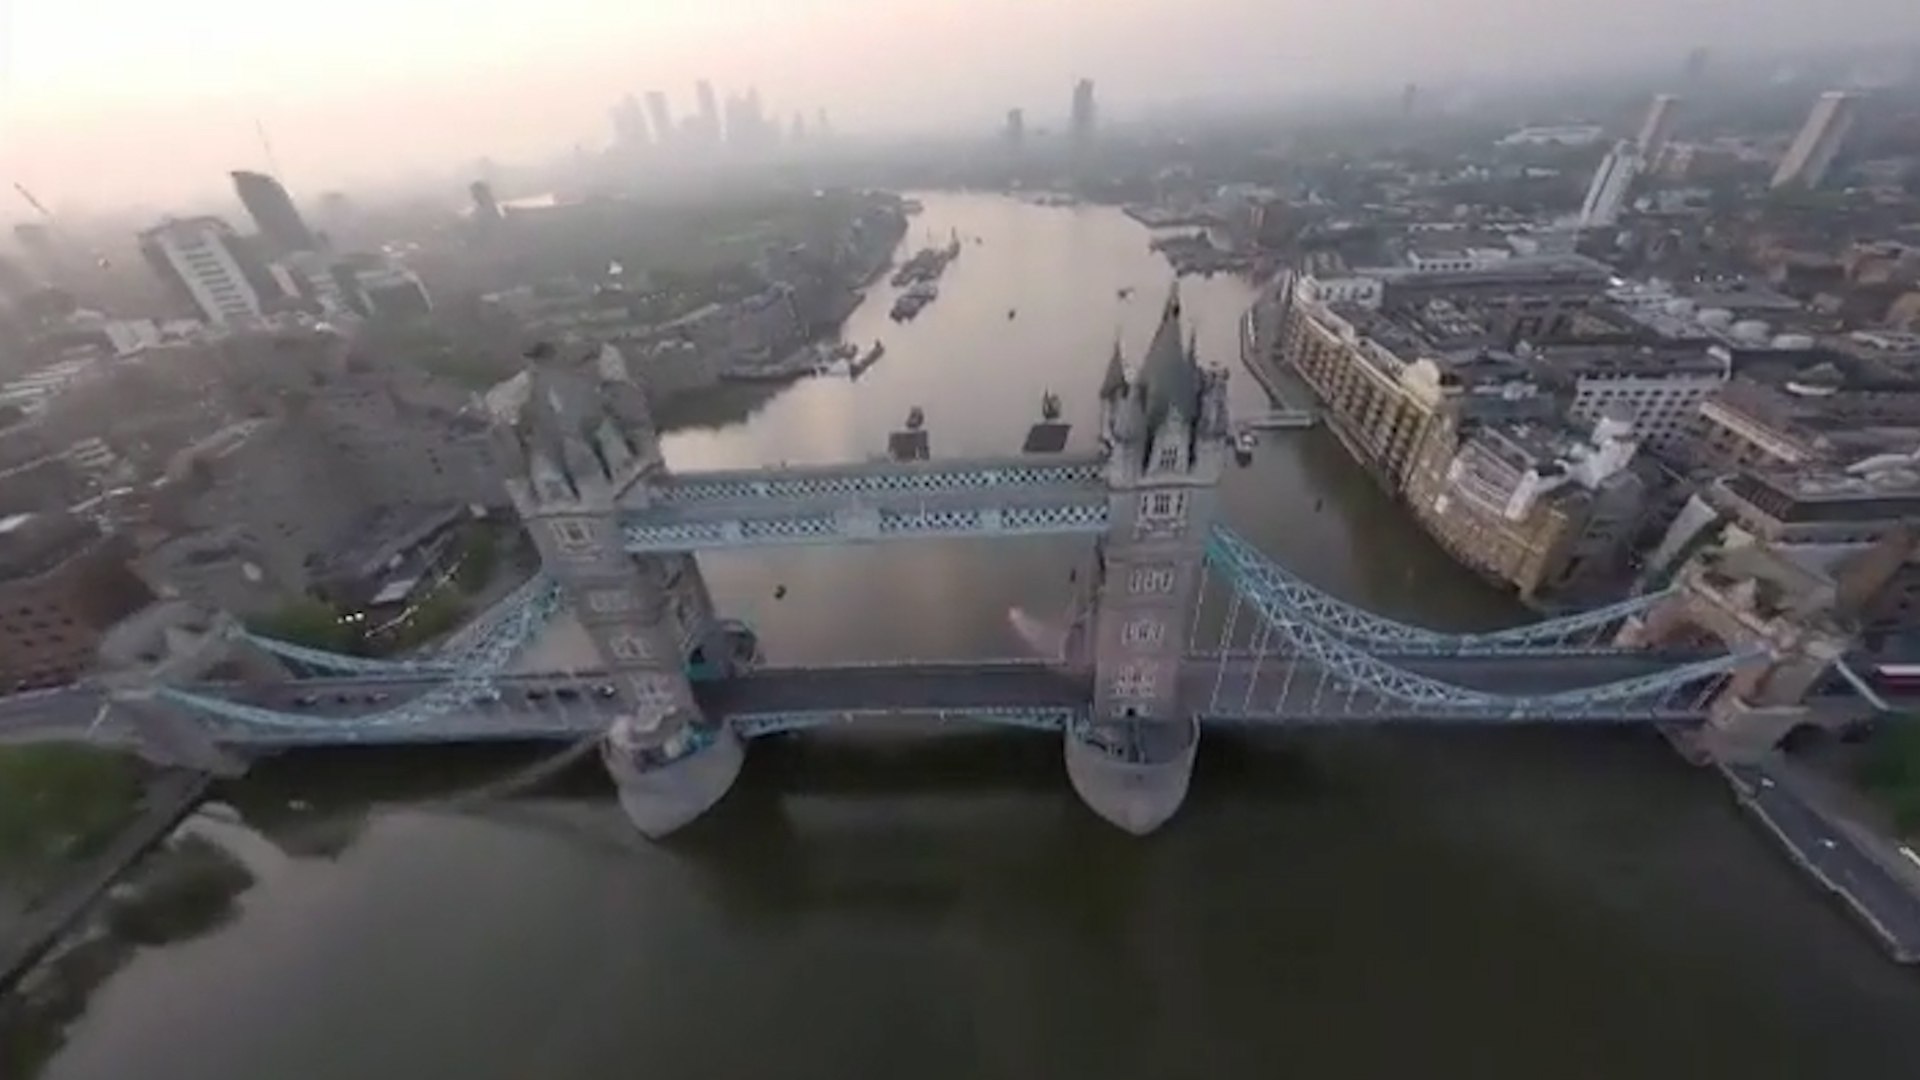 Arriesgado e histrico salto en paracadas para atravesar el Puente de la Torre de Londres